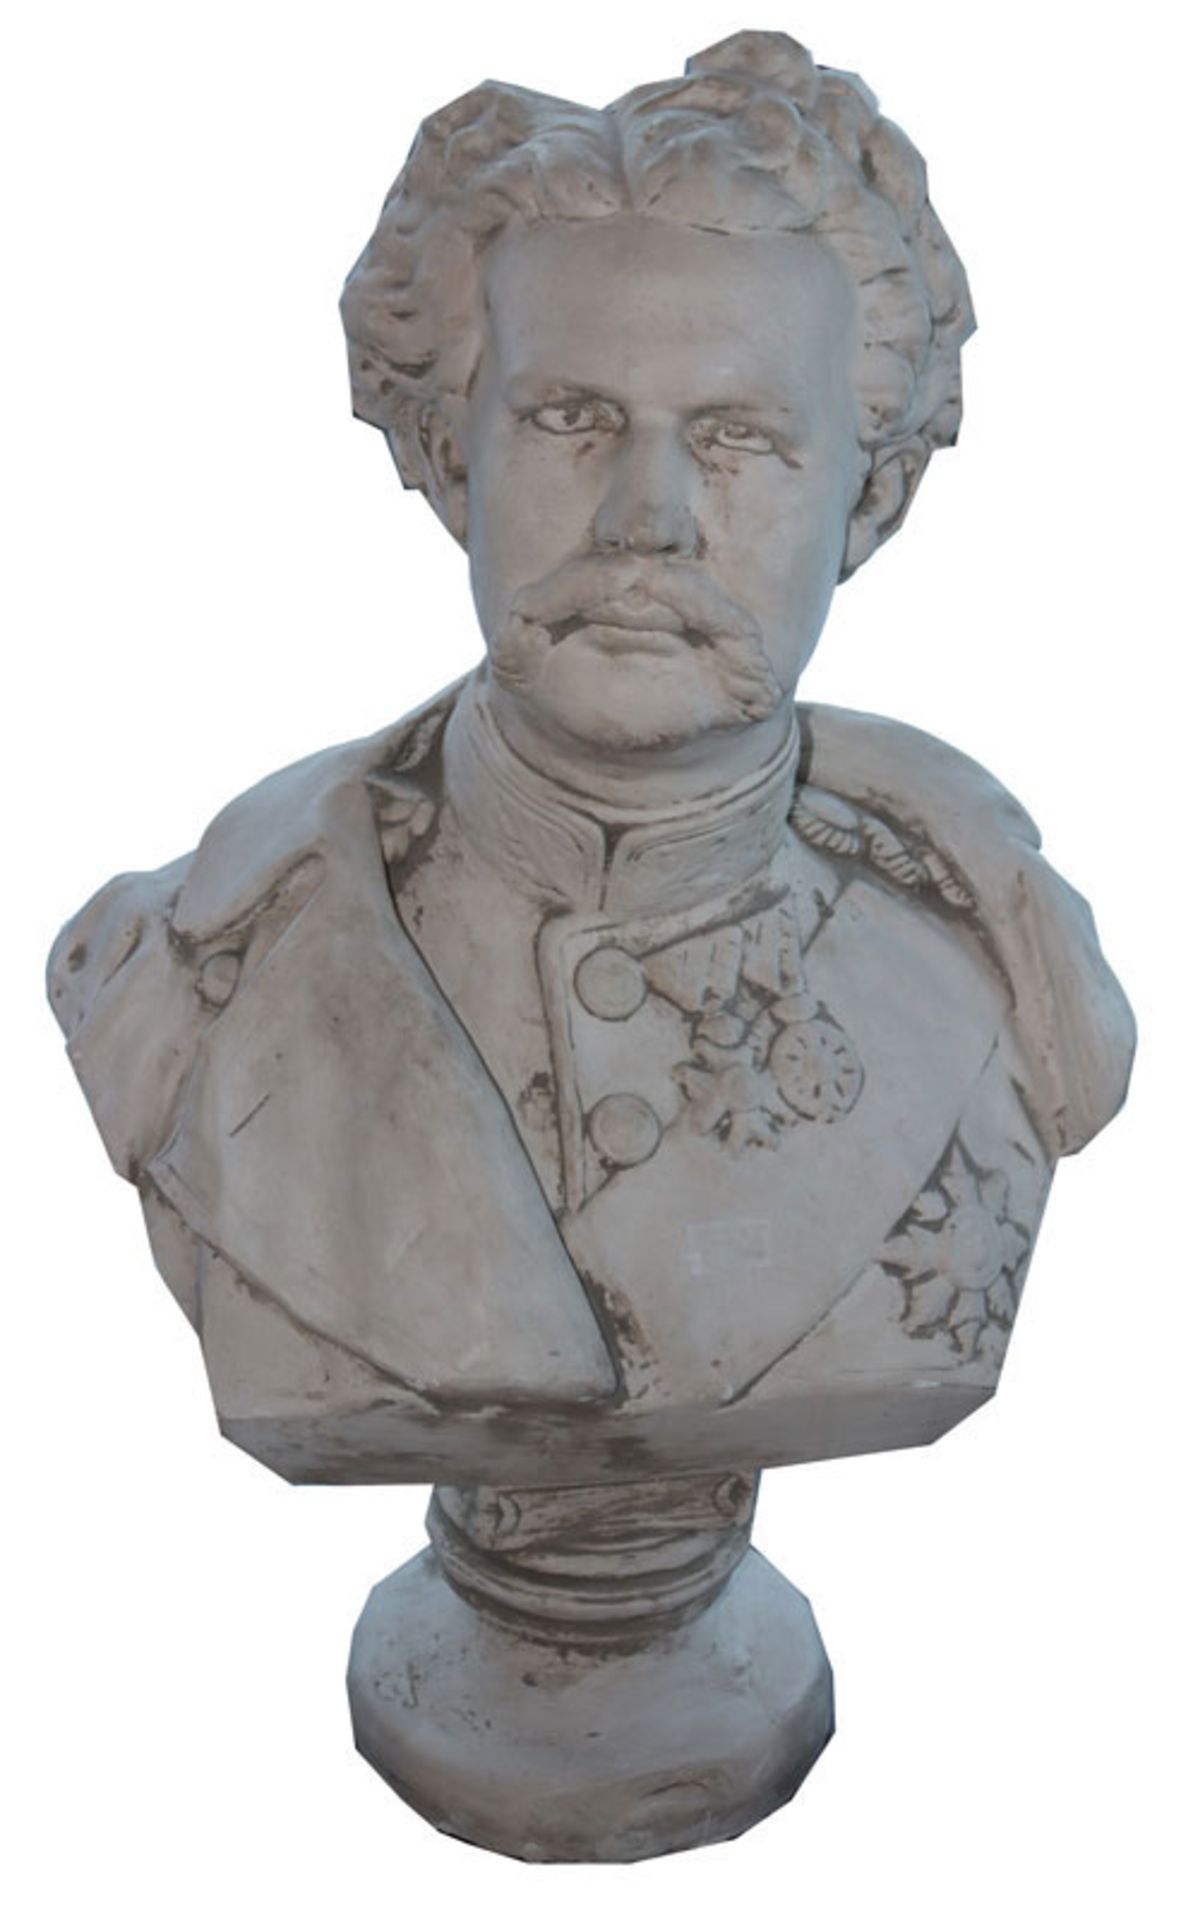 Gipsguß Büste 'König Ludwig II.', H 80 cm, B 50 cm, bestossen und geklebt, kein Versand, Abholung